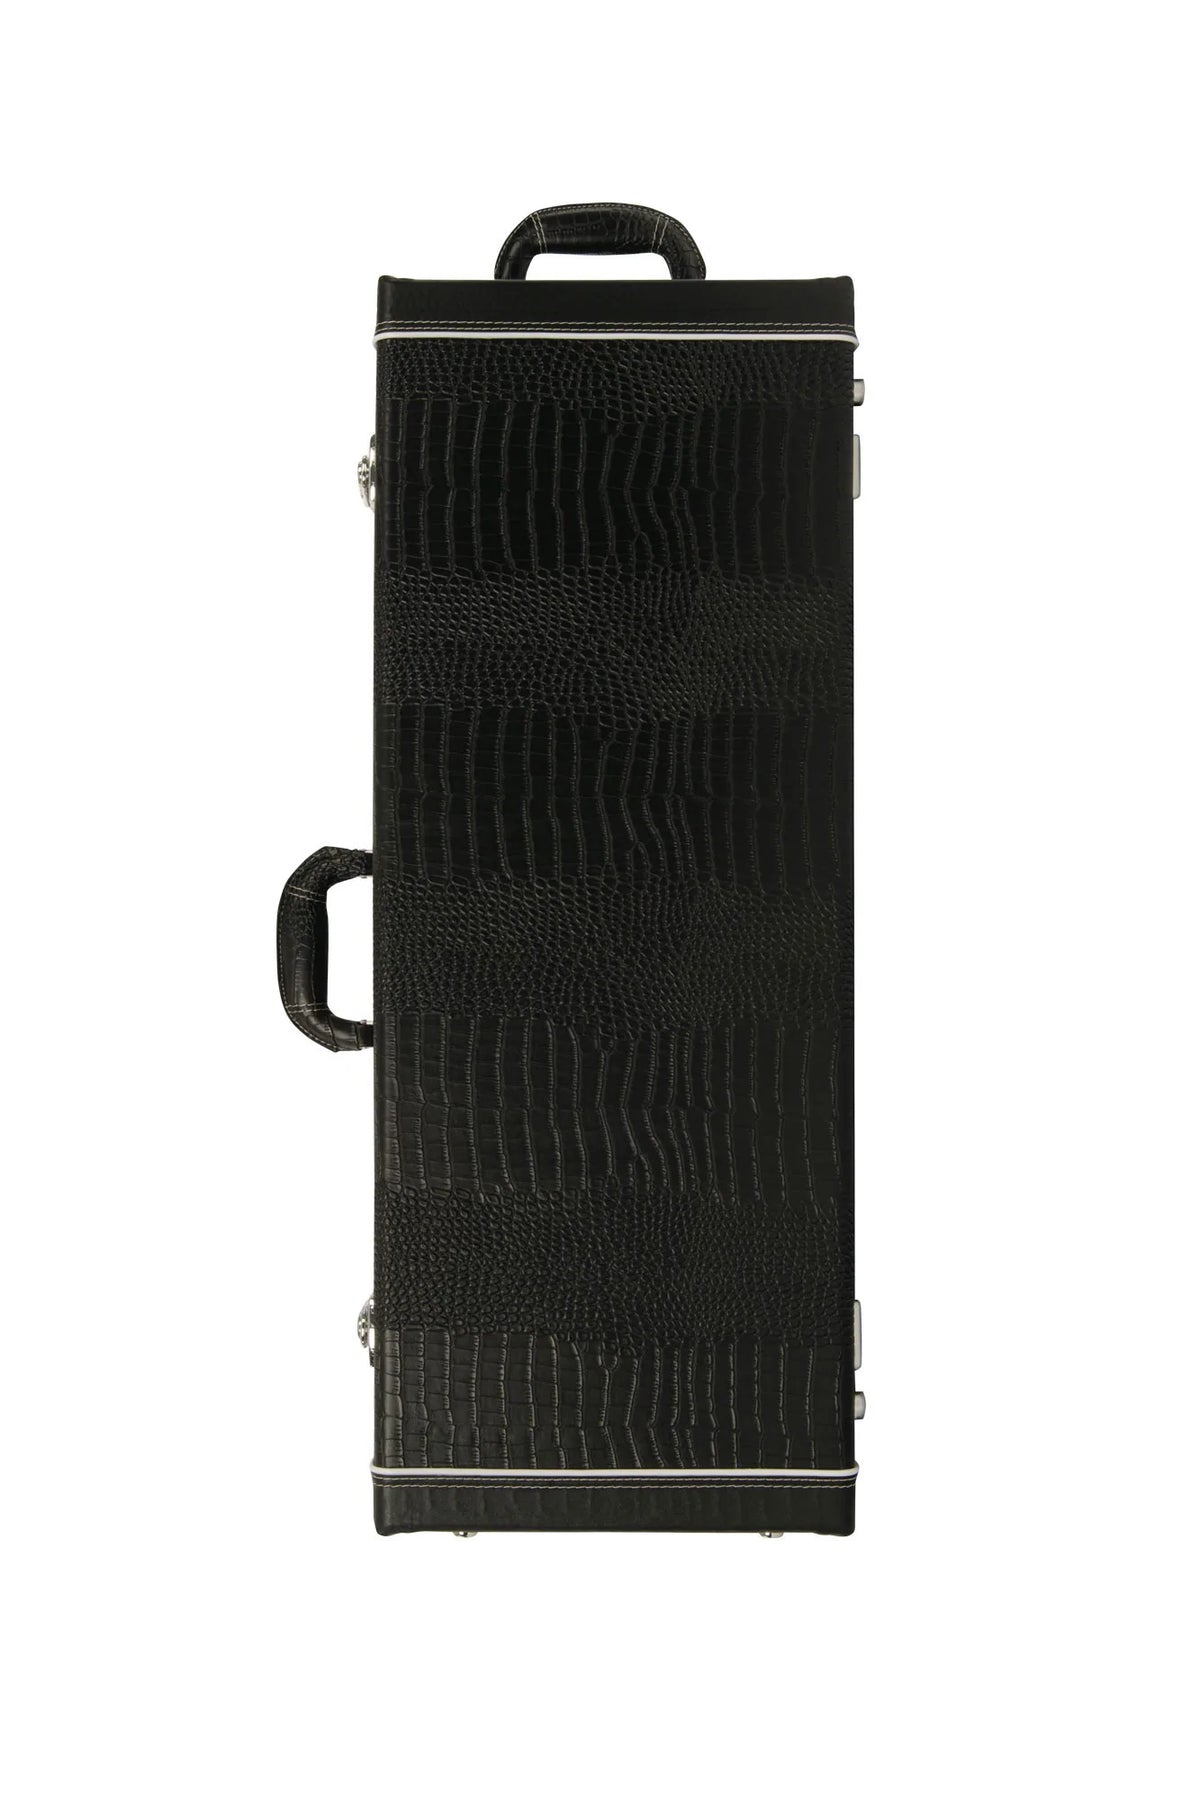 HC-UB UBASS® Rectangular Acoustic Hardcase Protect your uke bass with the Kala UBass Case. Suitable for all Kala Acoustic Ukulele Basses. Ukulele Trading Co Australia